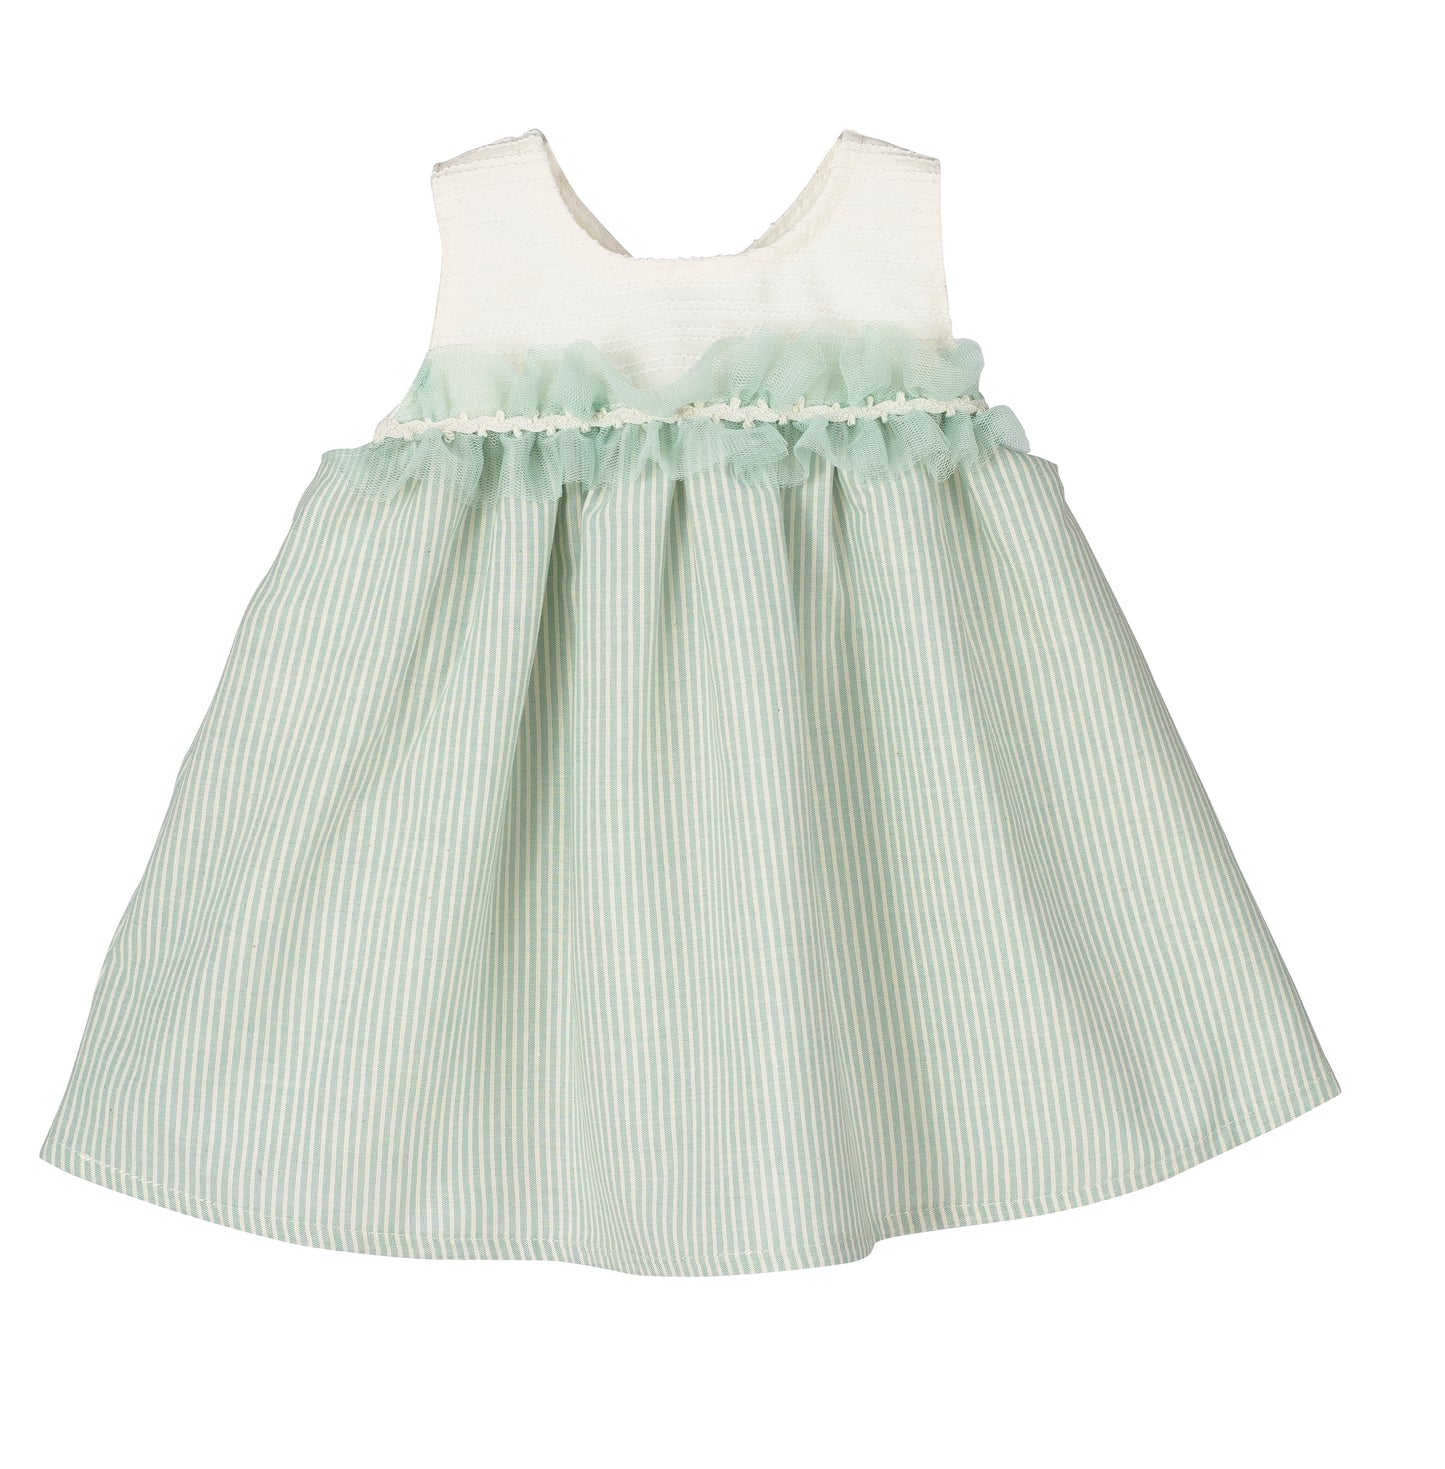 Calamaro Baby Girls mint & cream dress